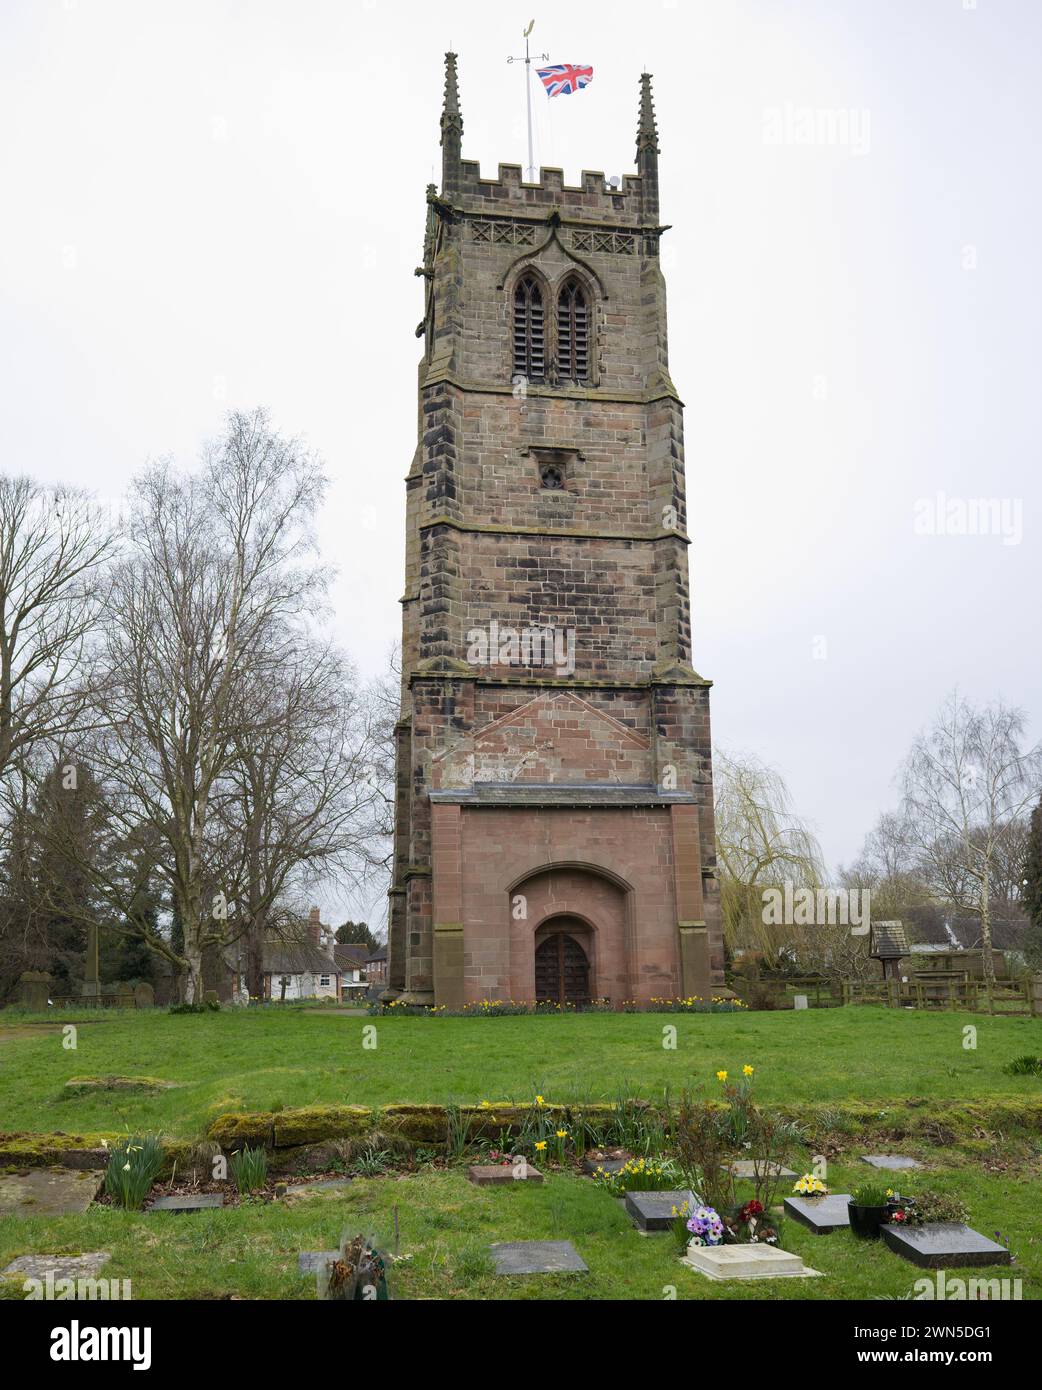 La Torre Pendente del South Cheshire a St Chad's, chiesa in stile gotico a Wybunbury - un edificio classificato di grado II e sito del patrimonio nazionale. Foto Stock